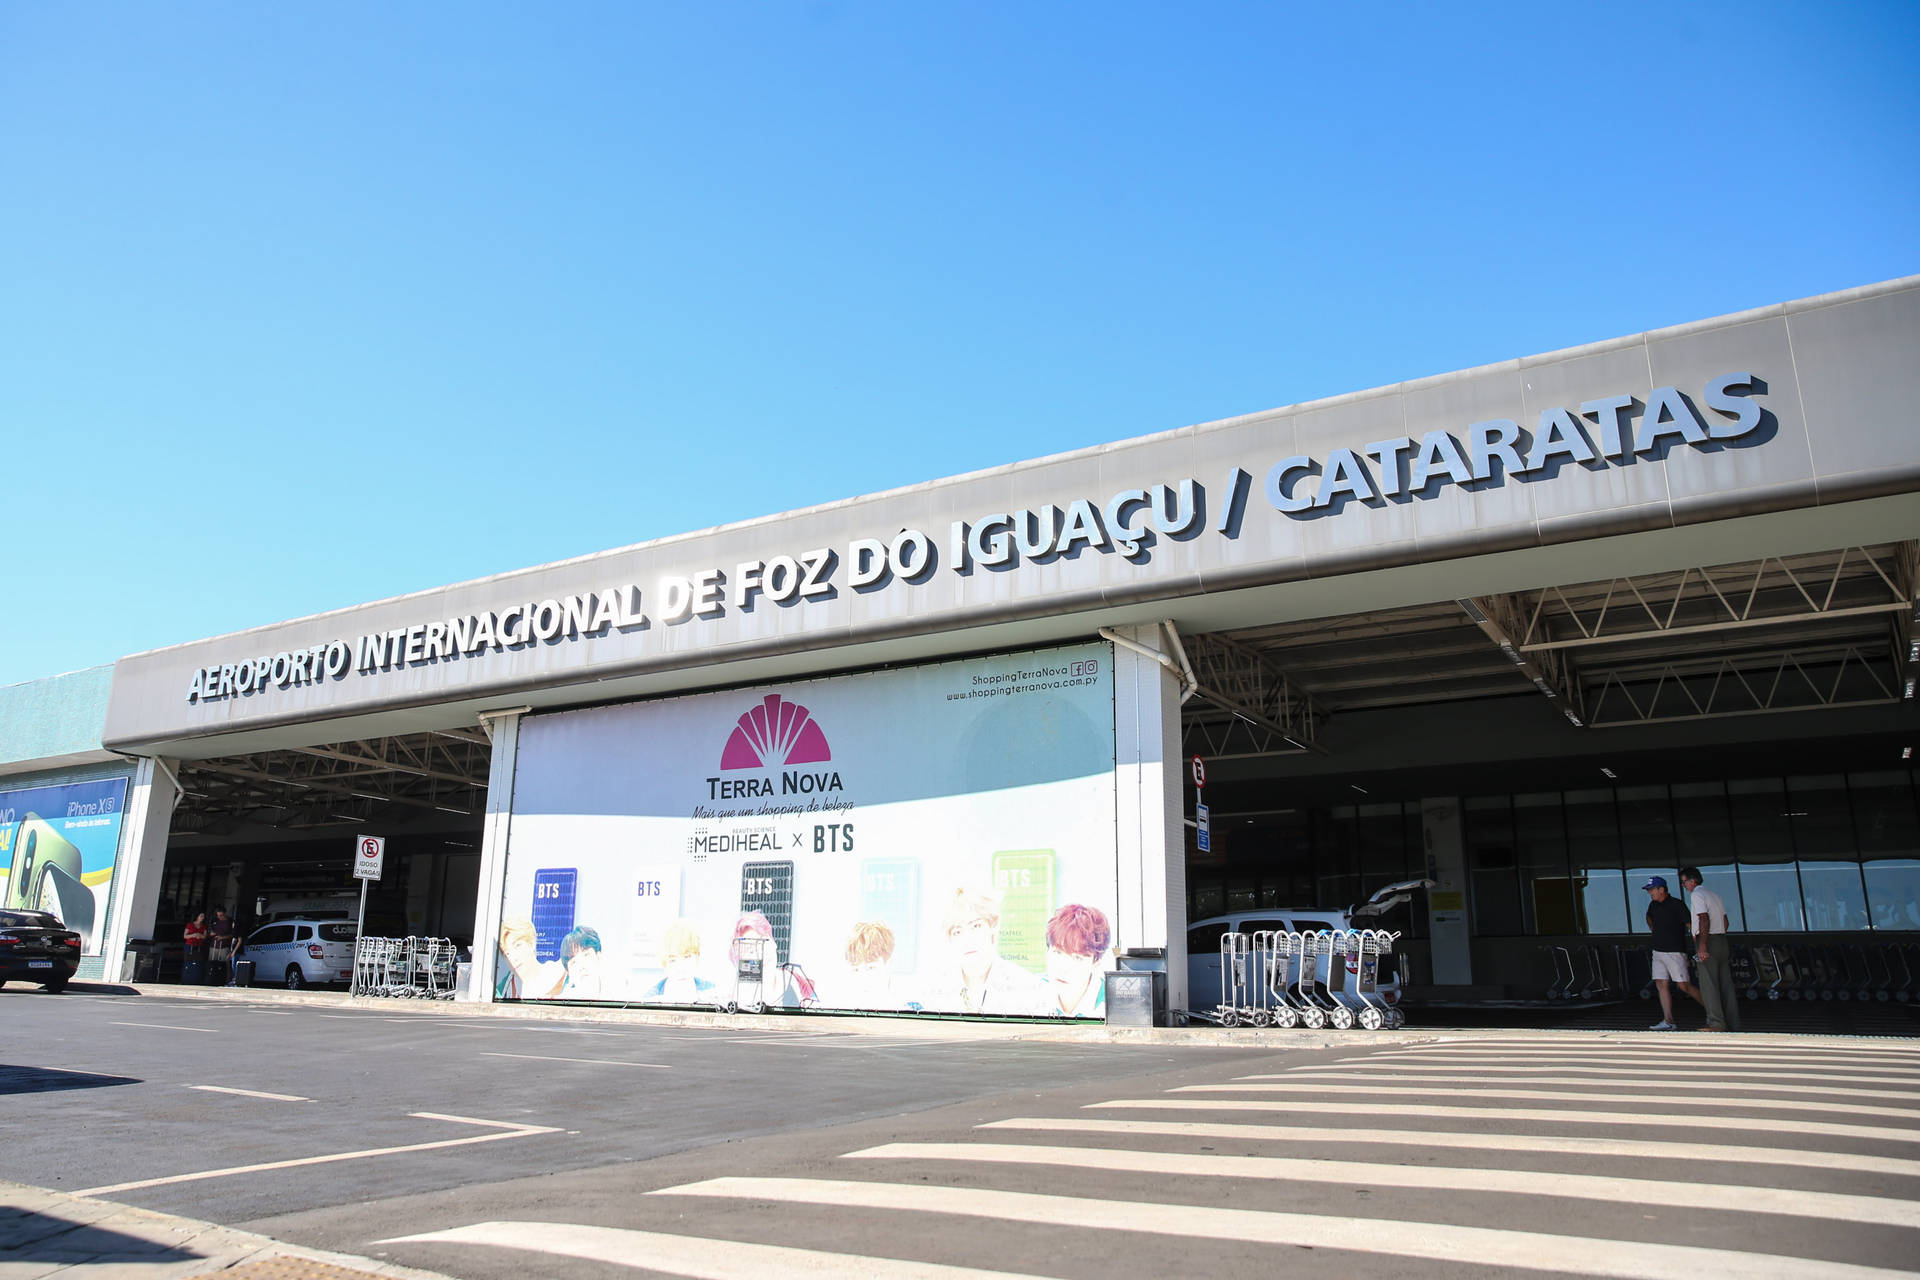  Foz do Iguaçu oferece voo direto para Uruguai